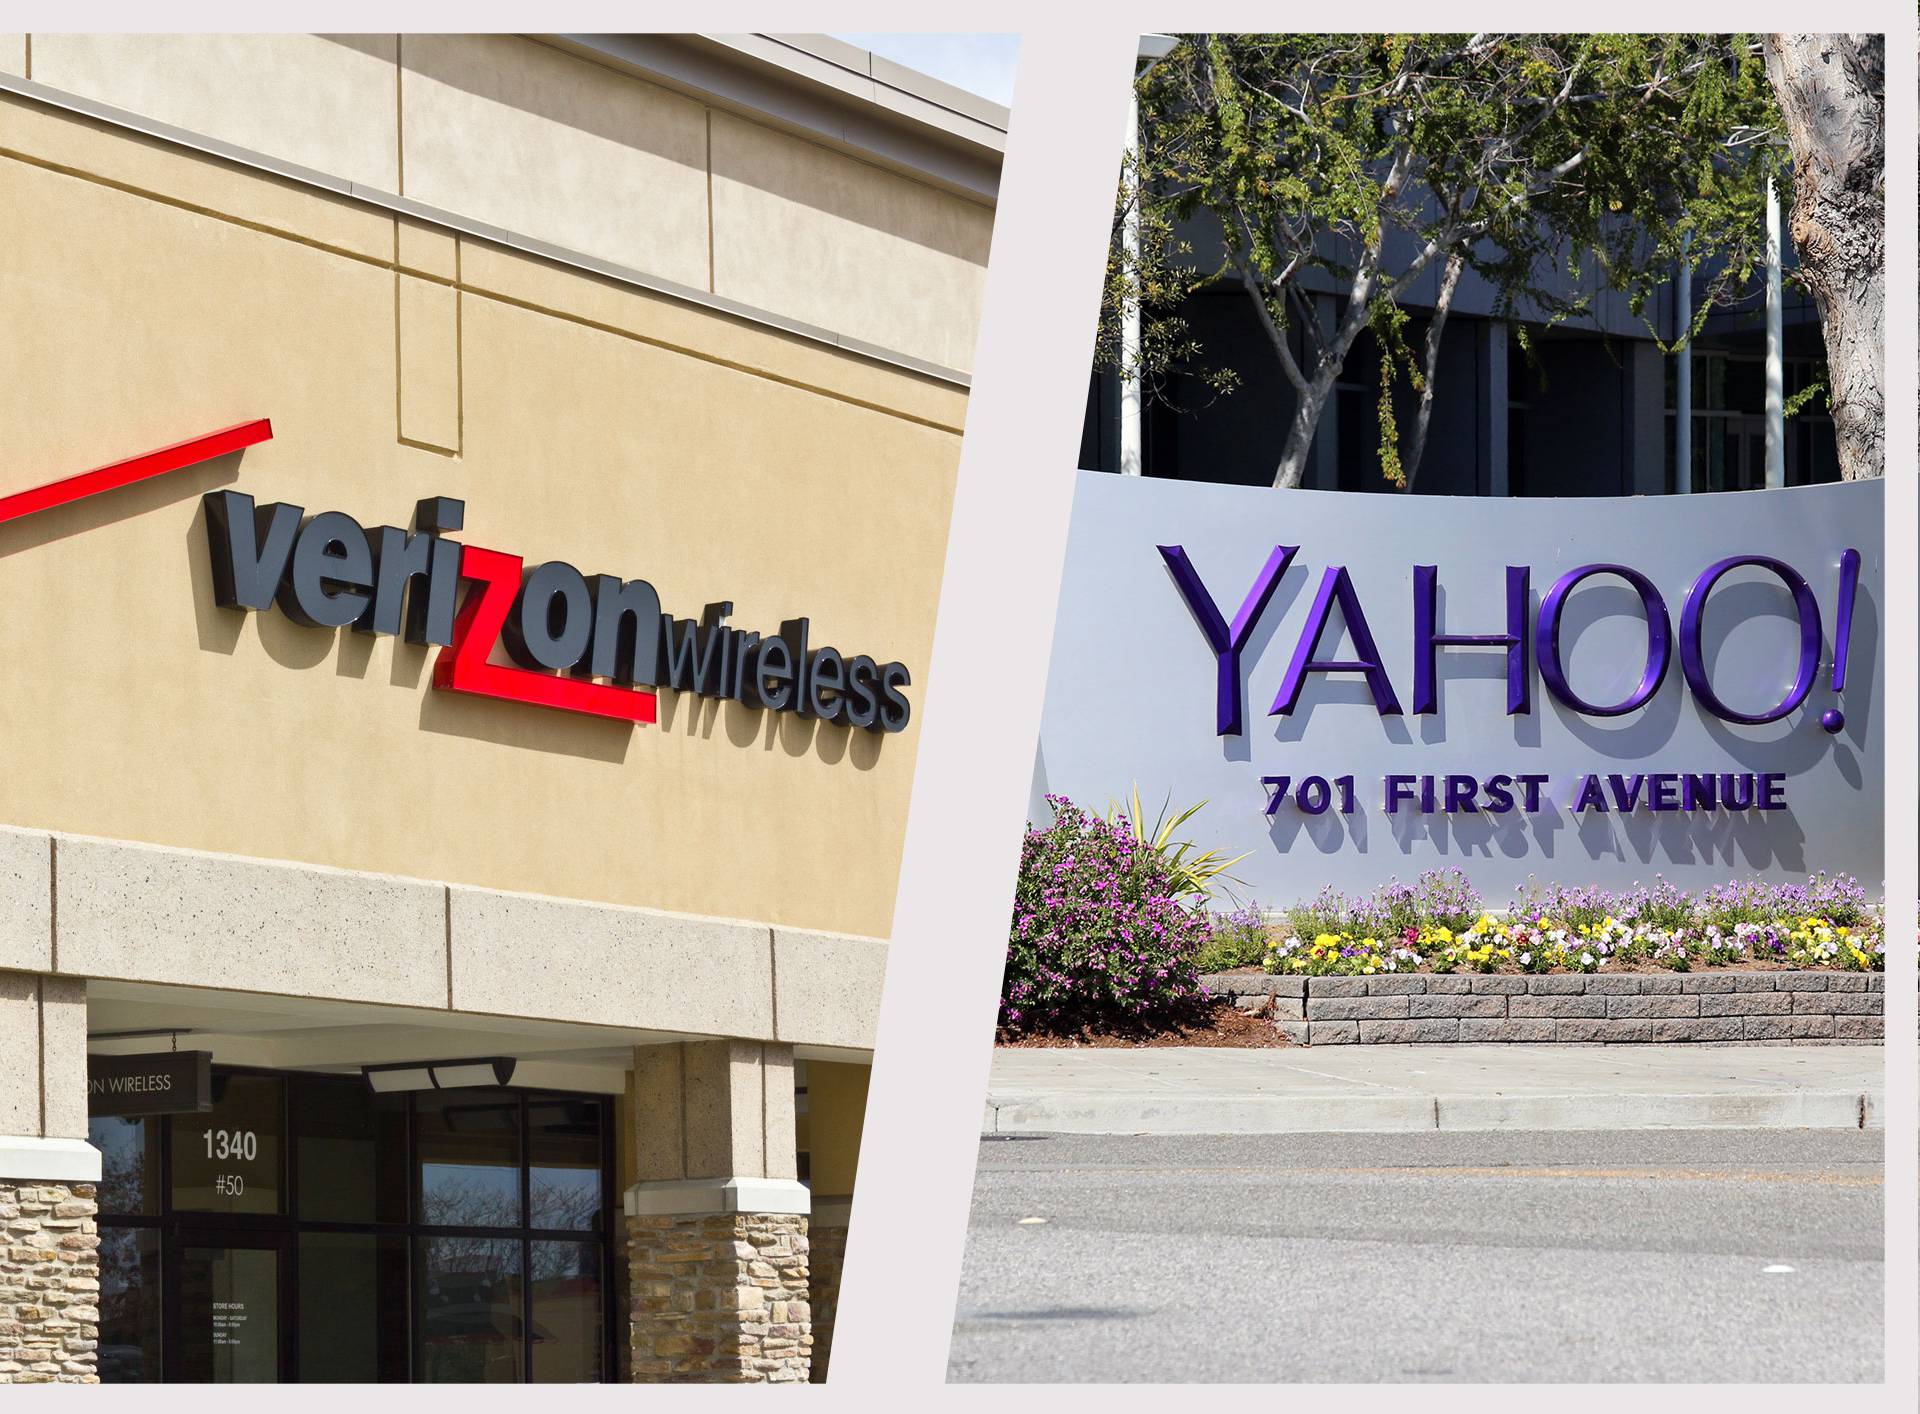 Verizon kupio Yahoo! Uzmite 50€ i trgujte dionicama